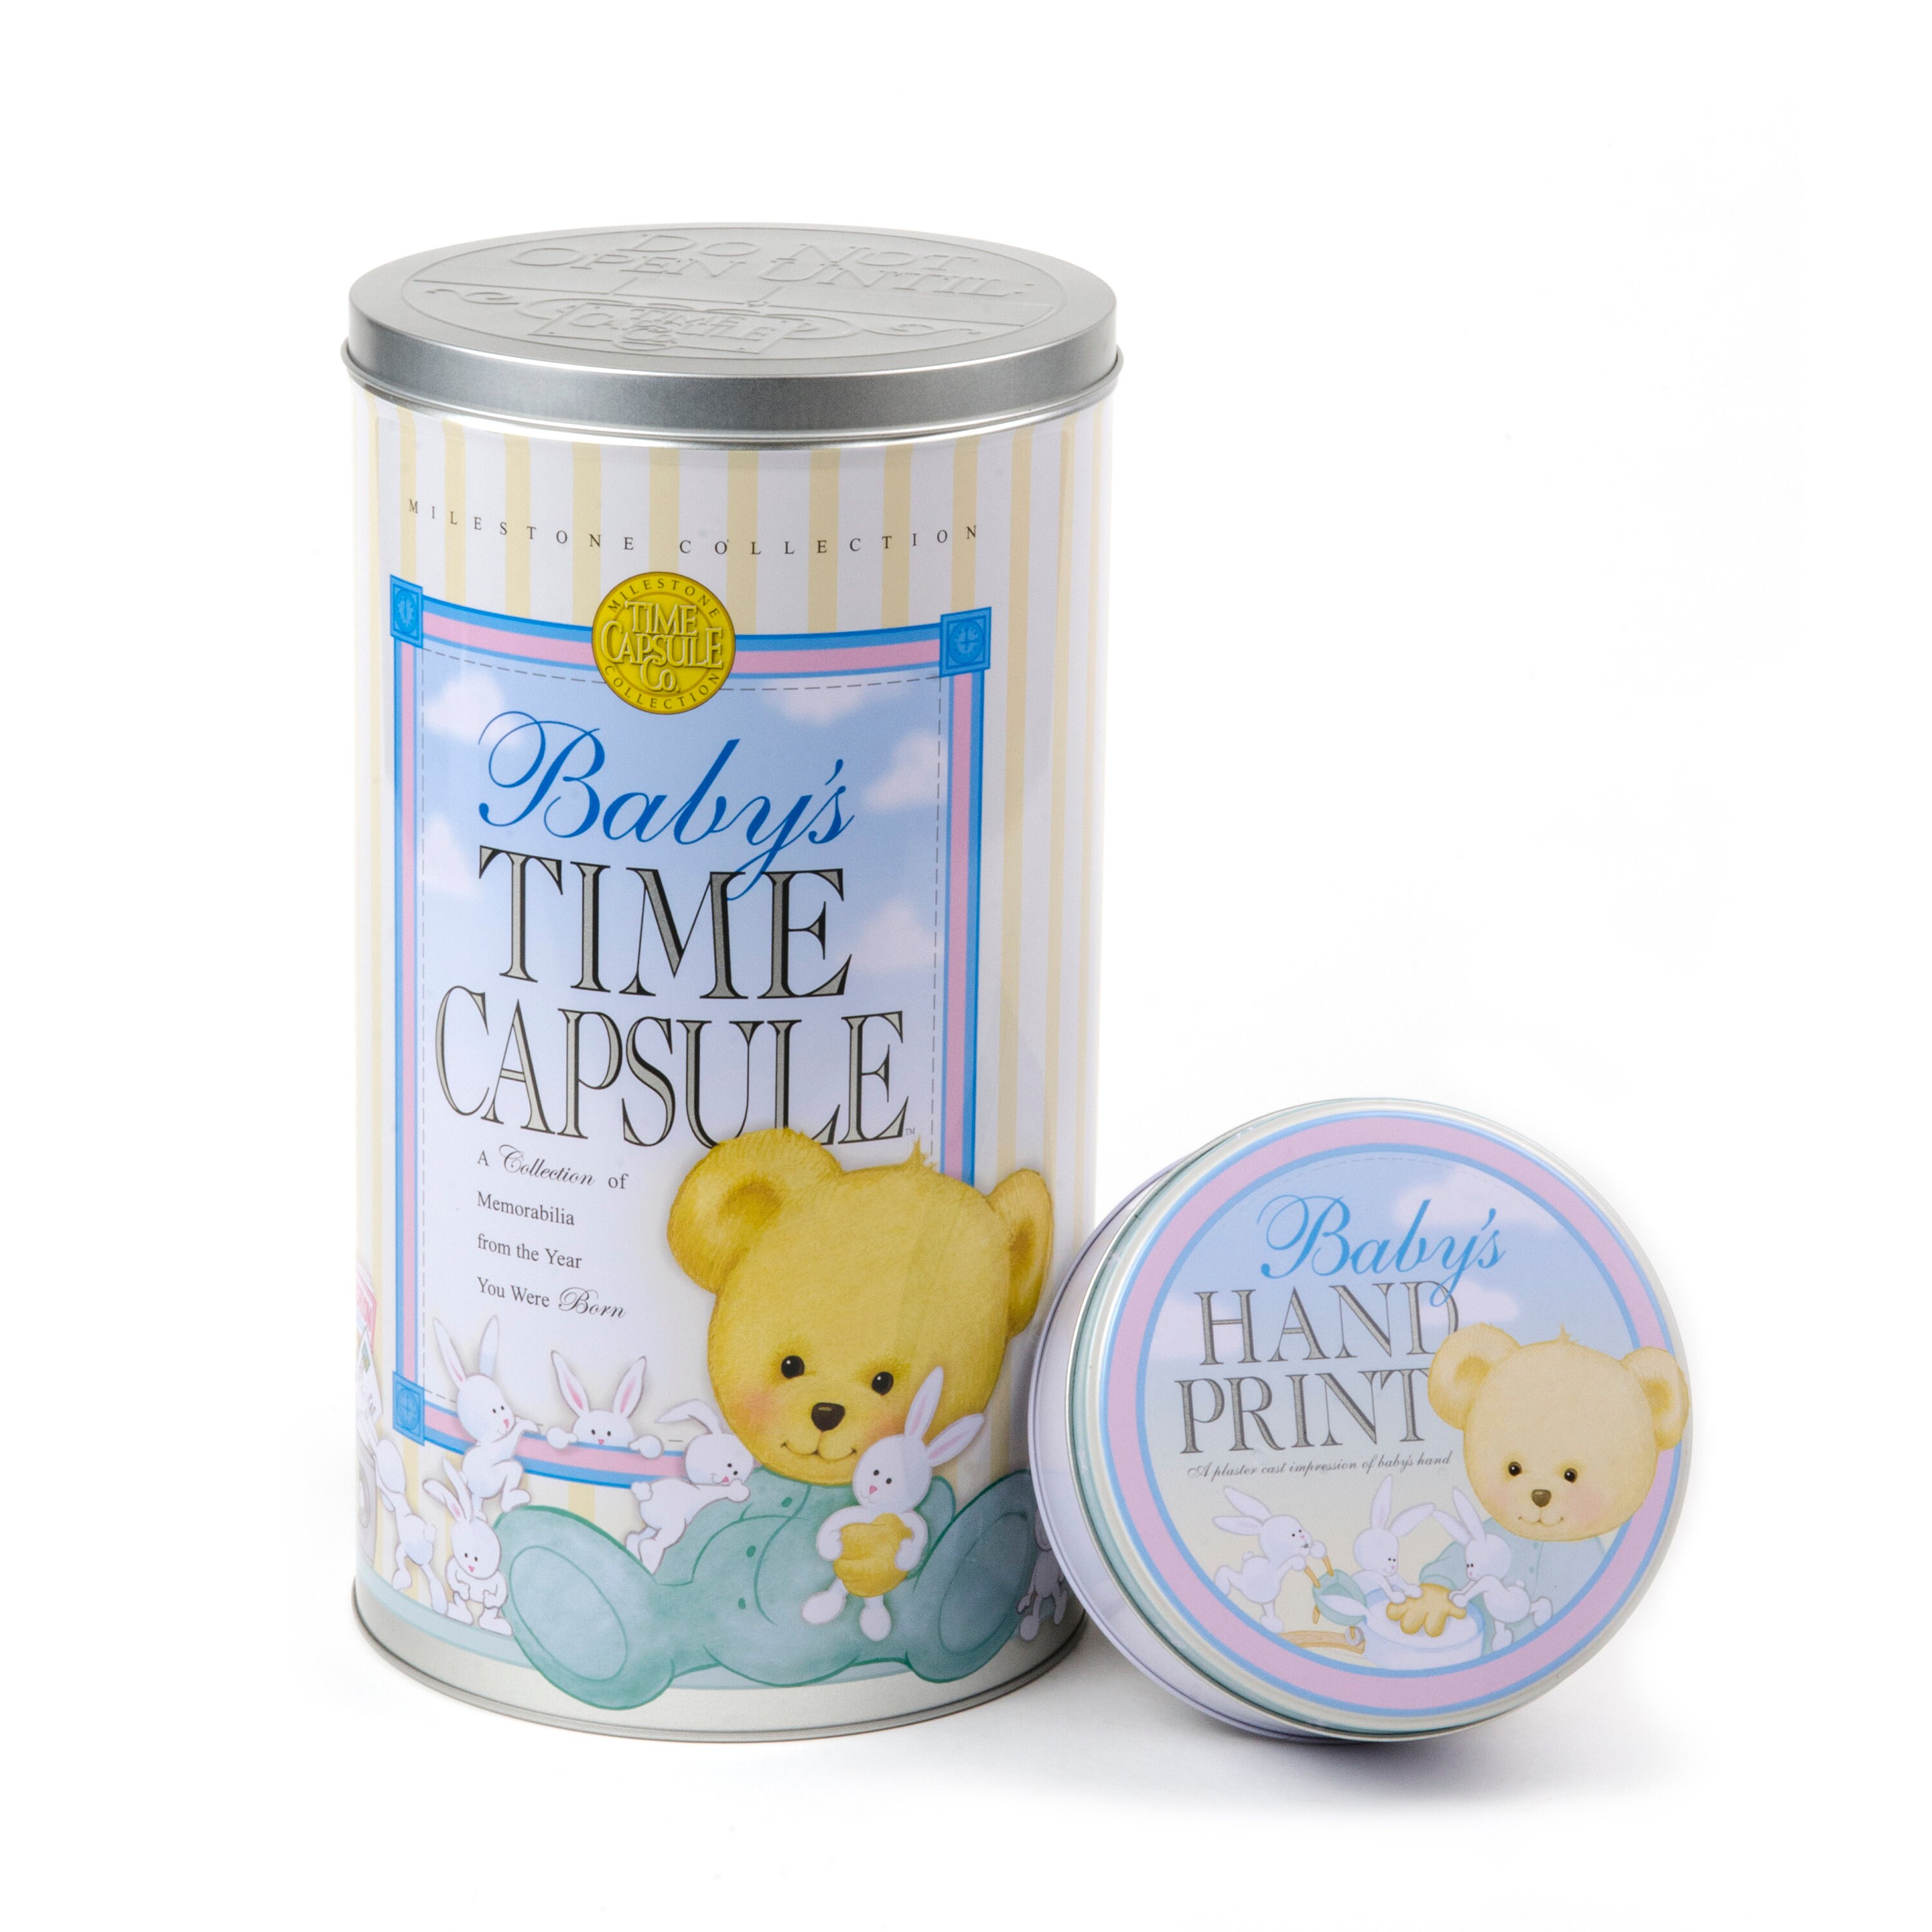 Memories Time Capsule and Plaster Handprint Kit Baby, Children, Gift (NEW)